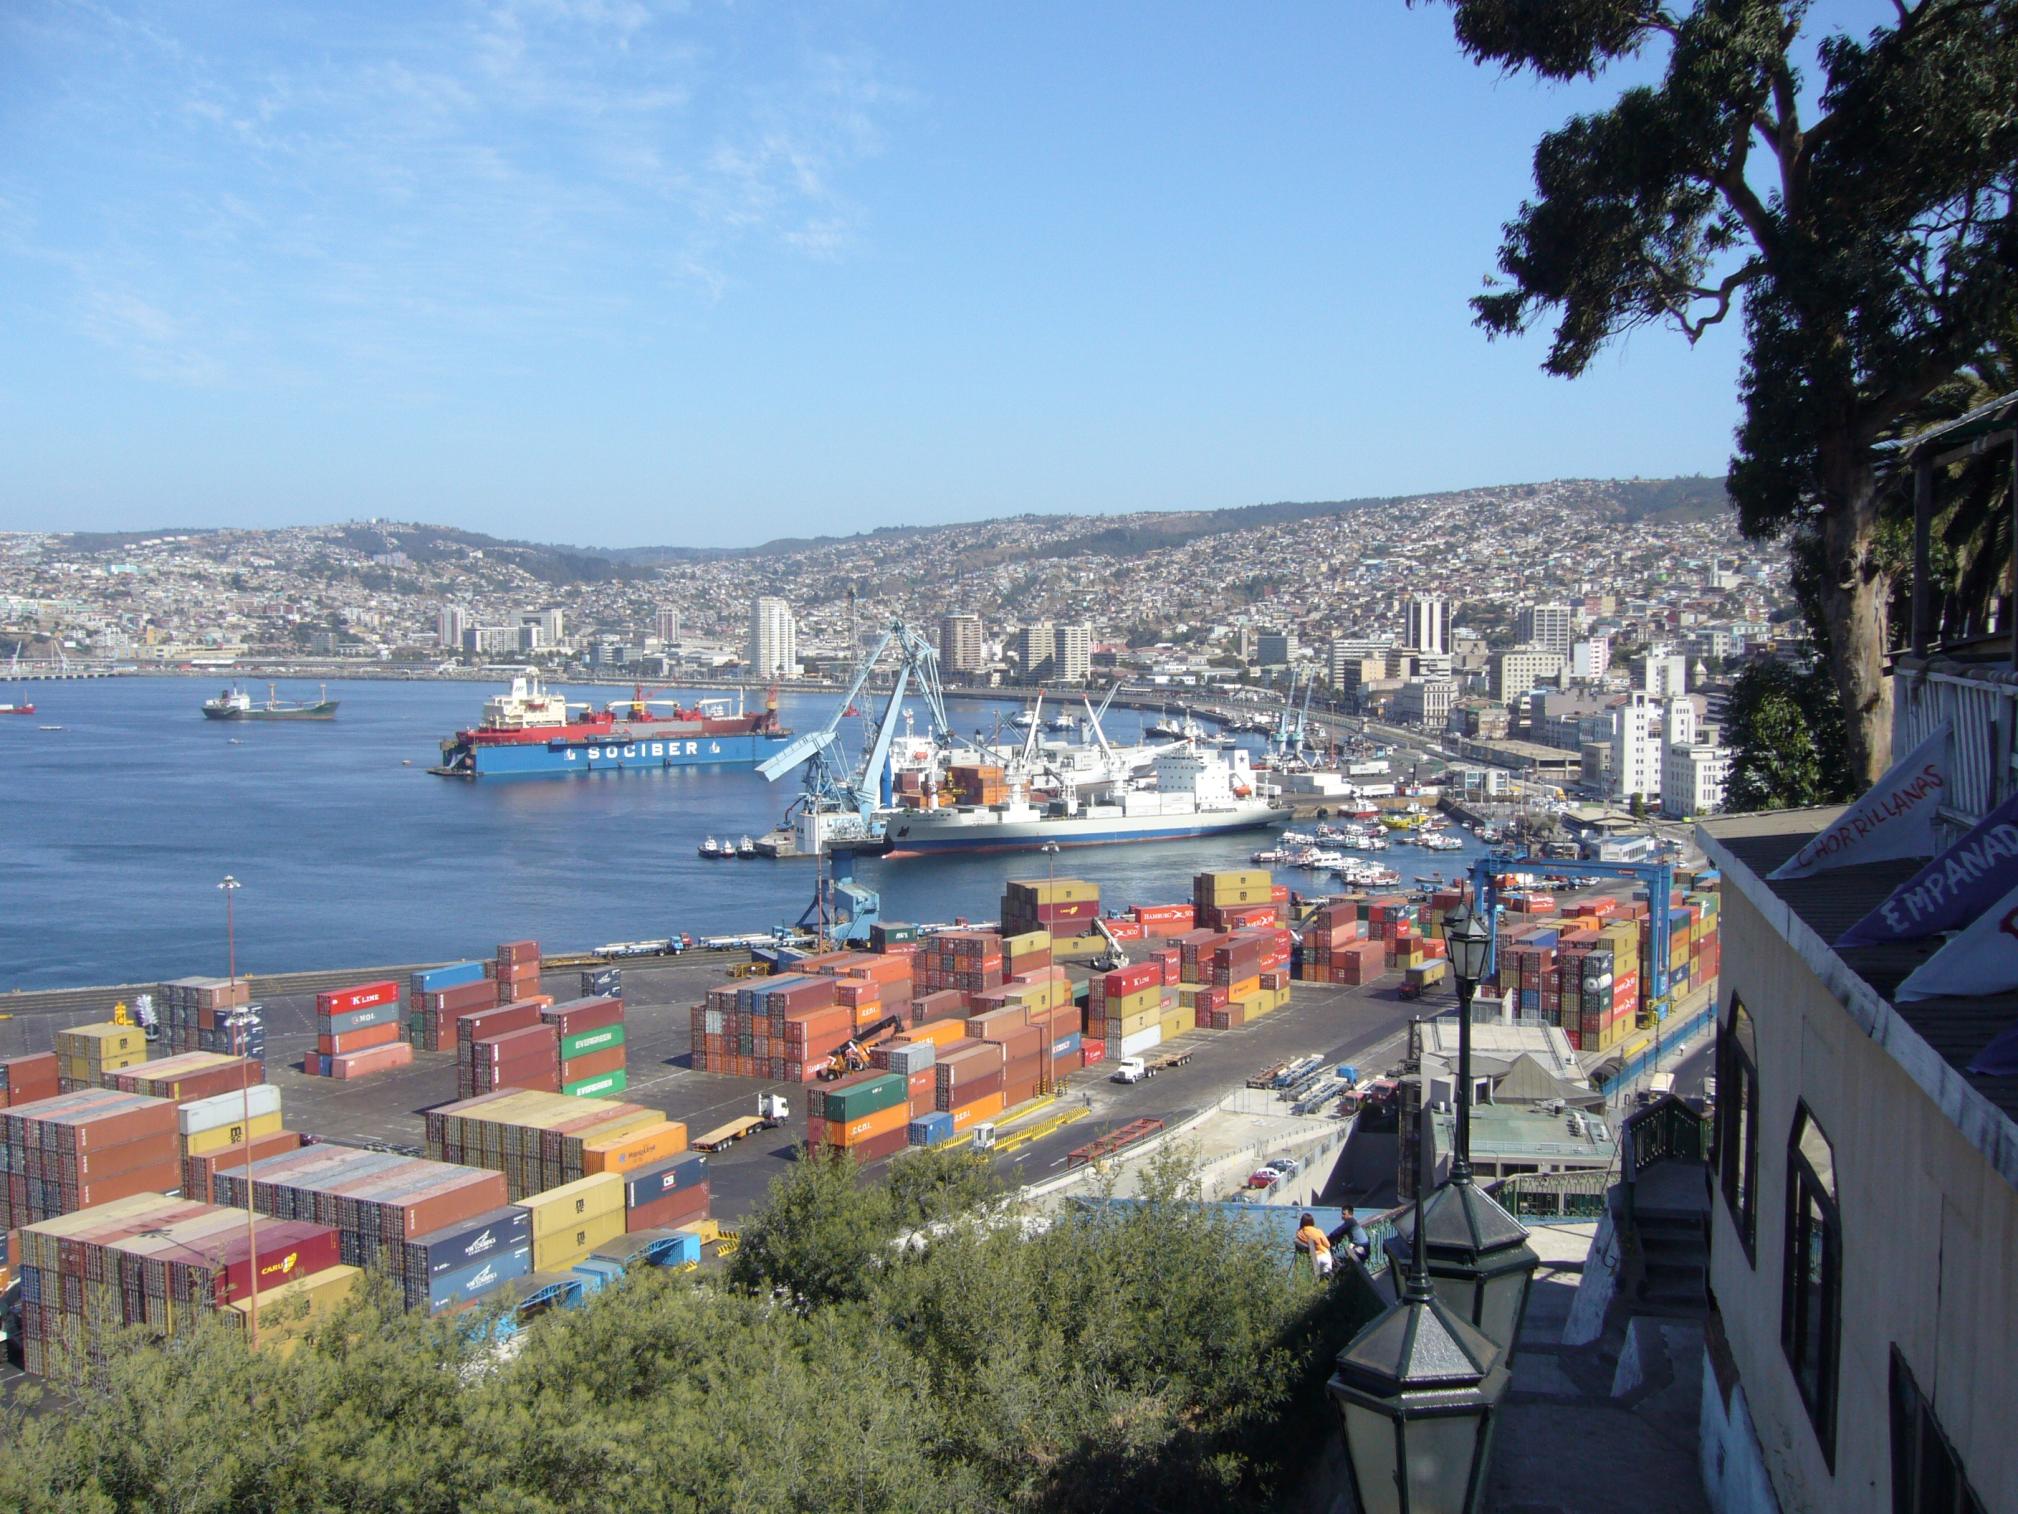 Overzicht van de haven van Valparaiso in Chili